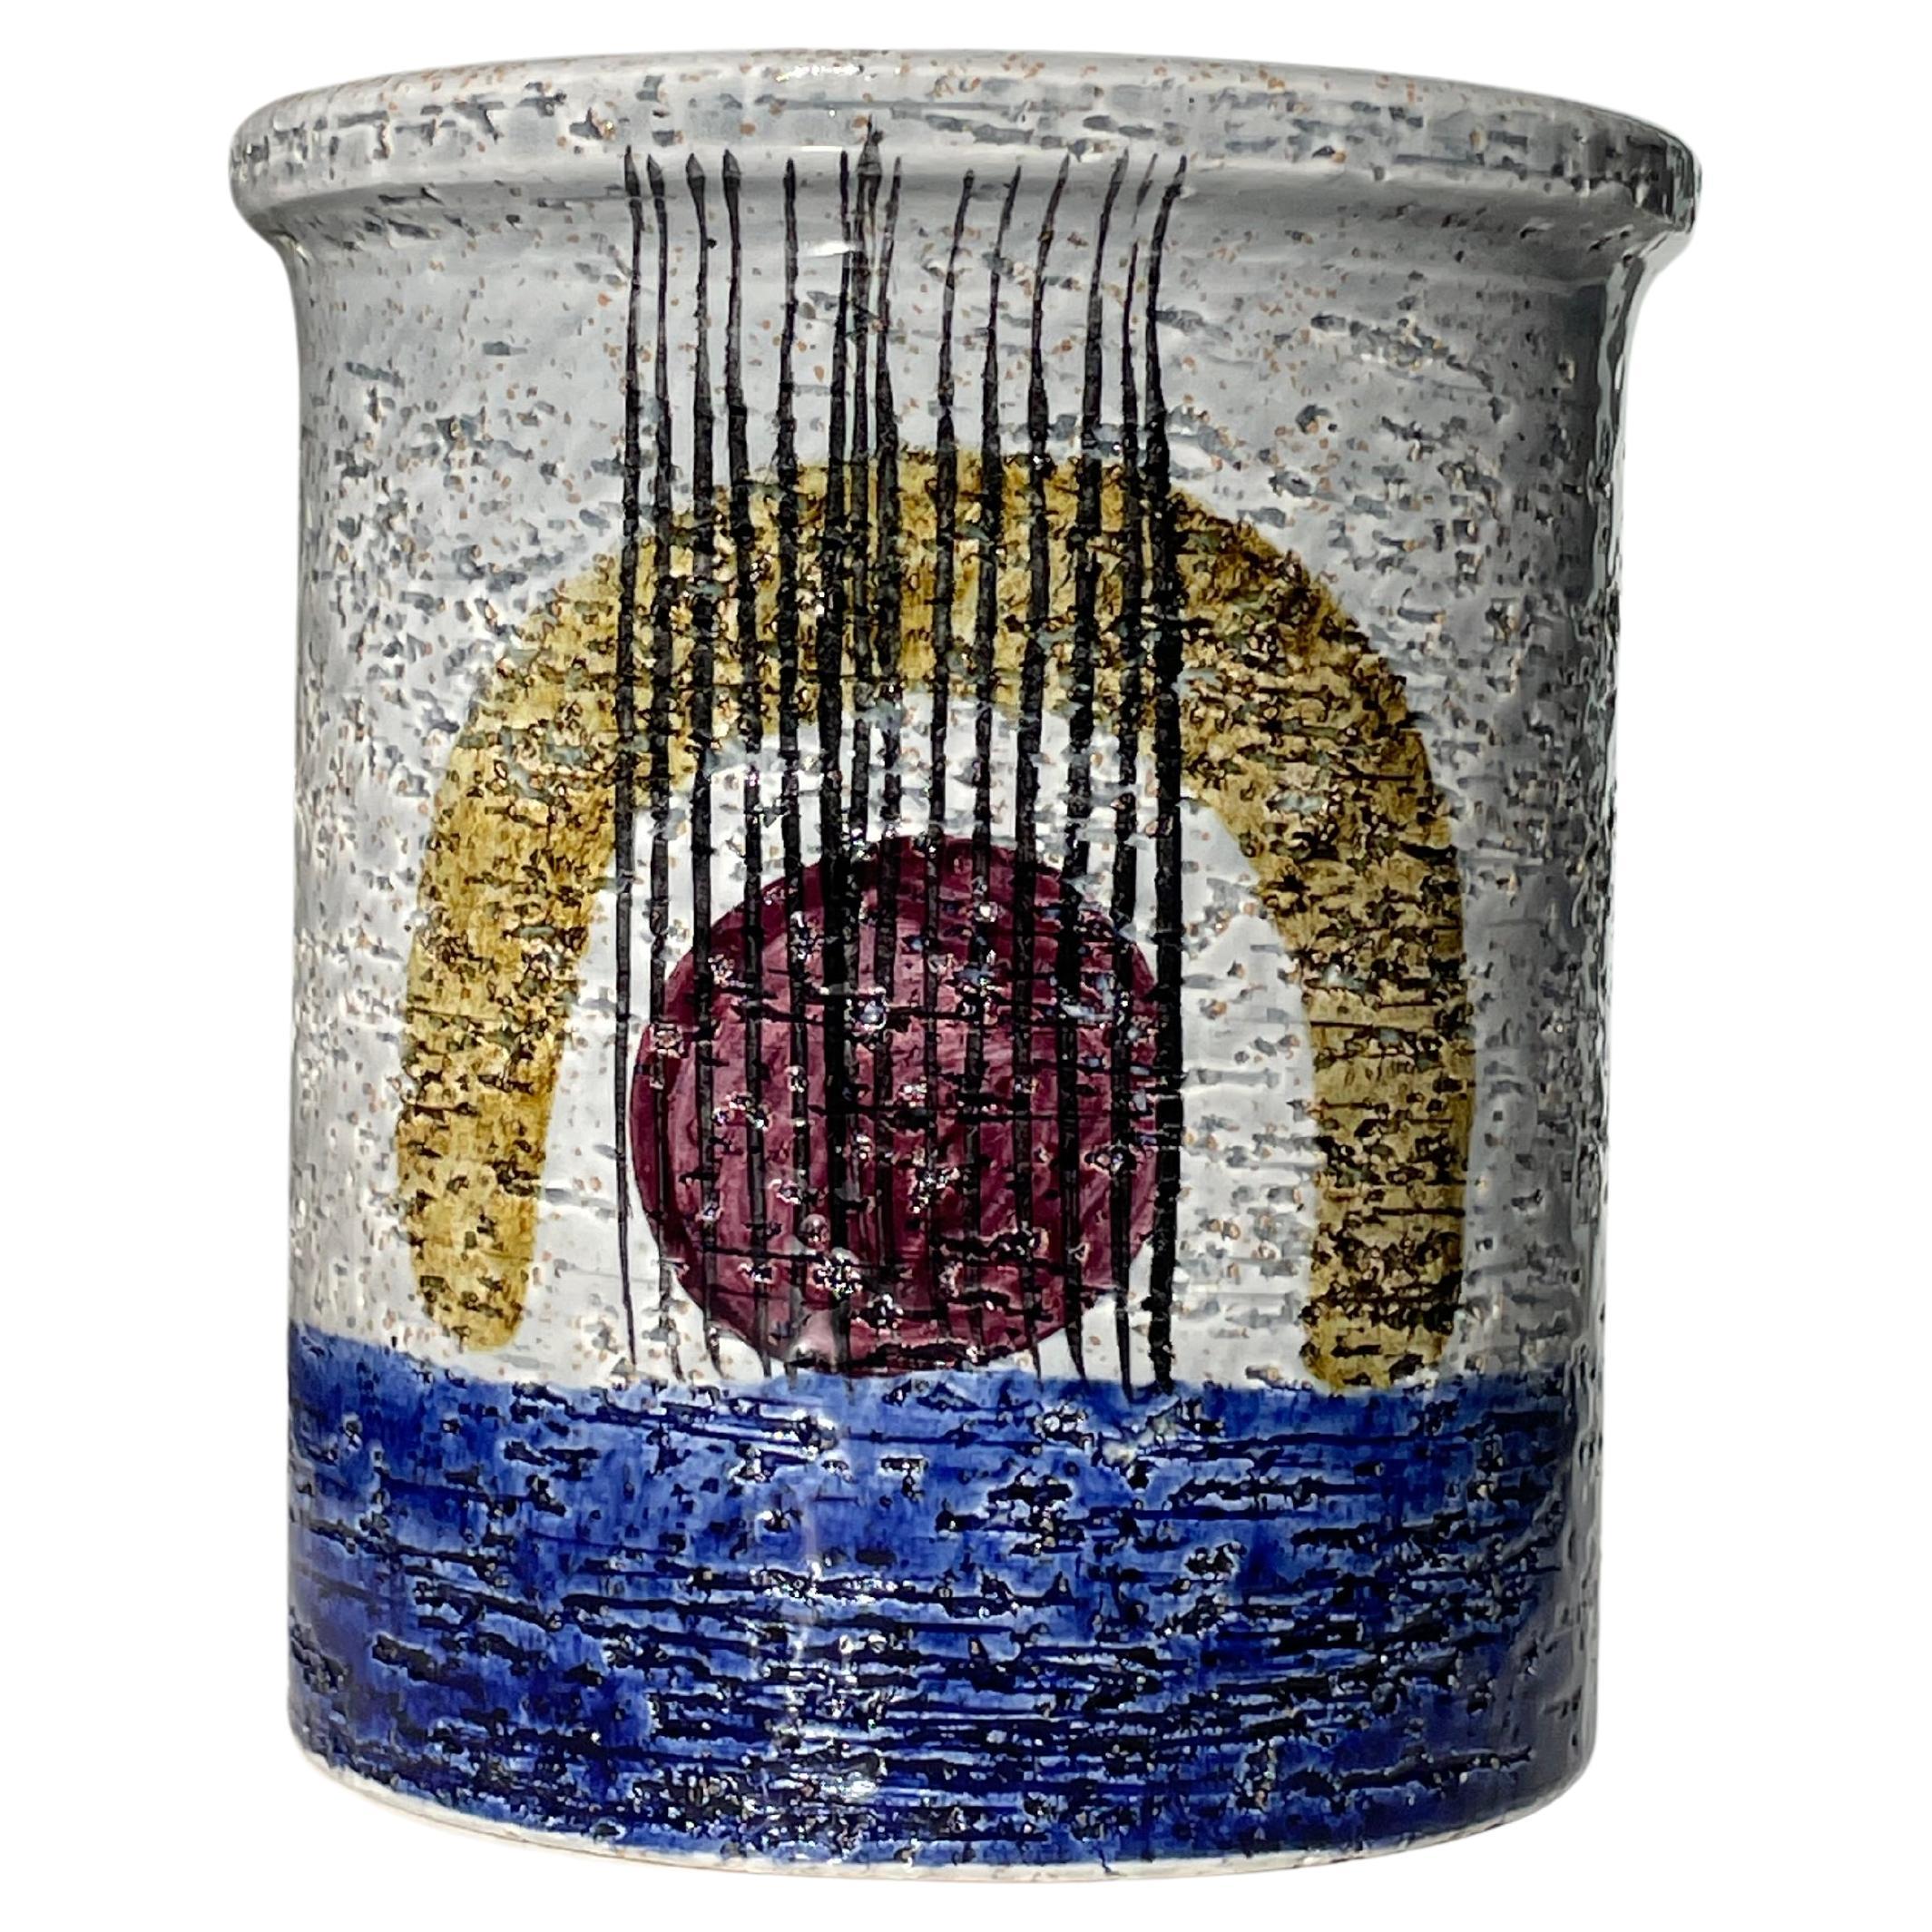 Hochwertige schwedische Mid-Century Modern Vase aus handgefertigter und handdekorierter, glänzender Keramik aus Schamotte-Ton des schwedischen Designers Olle Alberius. Vollständig glasiert mit hellgrauem Boden und tiefblauem Vasenunterteil. Auf